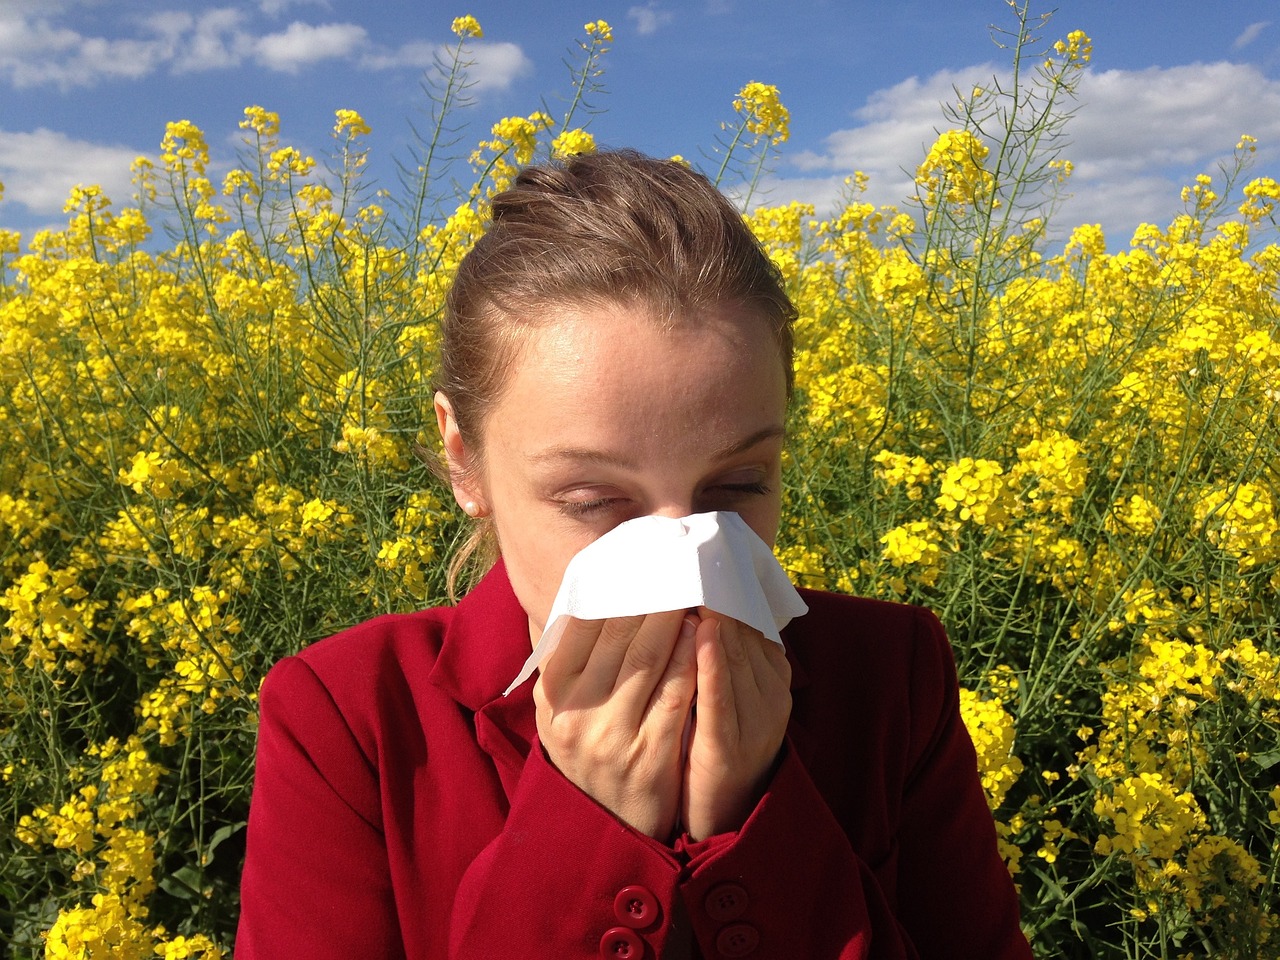 Egy új kutatás szerint a magyaroknak közel a fele allergiás valamire